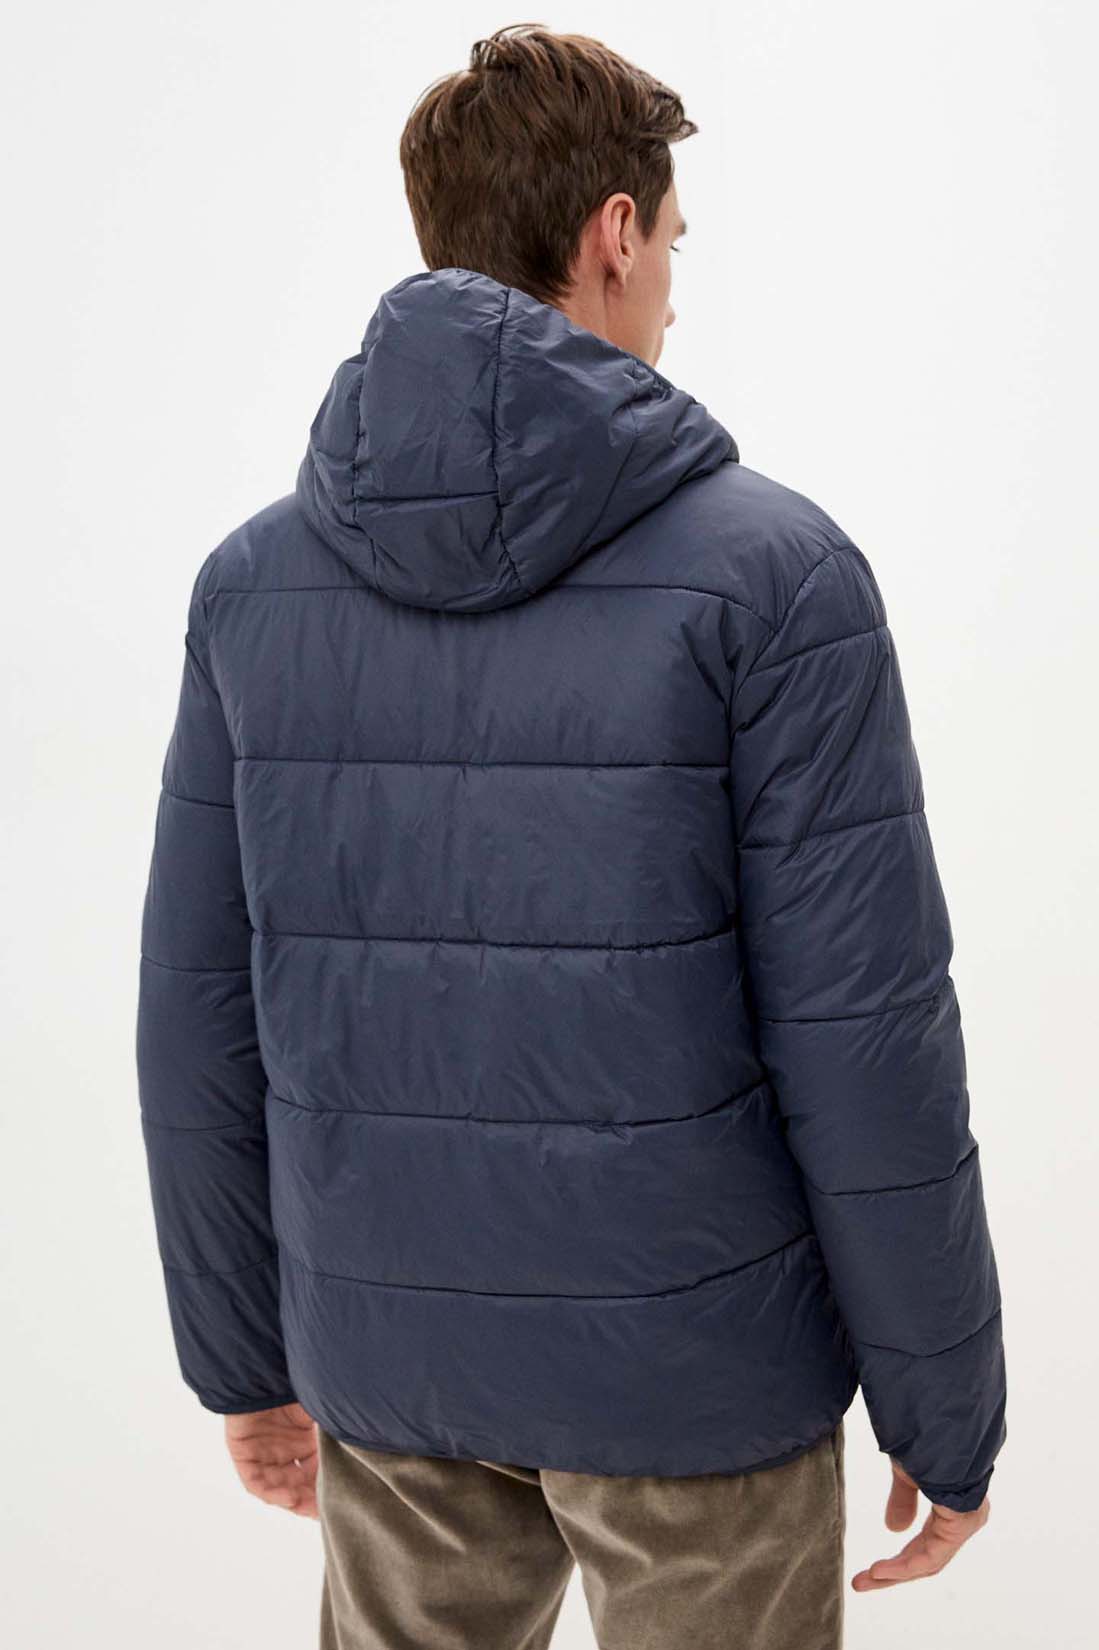 Куртка (Эко пух) (арт. baon B541701), размер XL, цвет синий Куртка (Эко пух) (арт. baon B541701) - фото 2